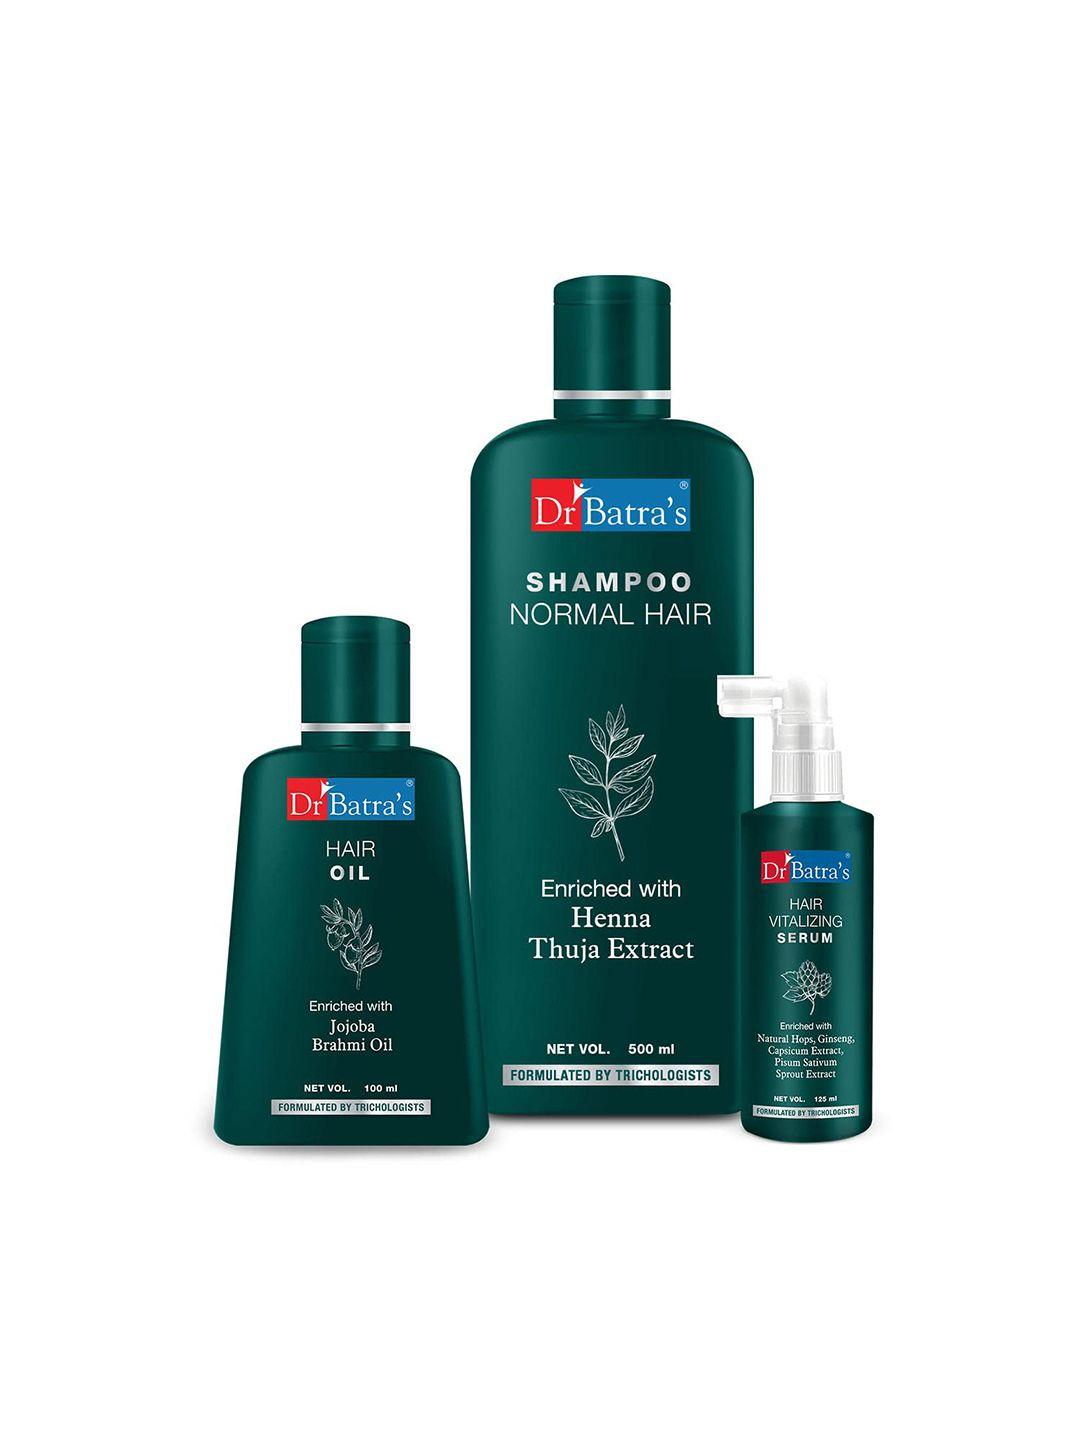 dr. batras hair vitalizing serum 125ml + normal hair shampoo 500ml + hair oil 100ml